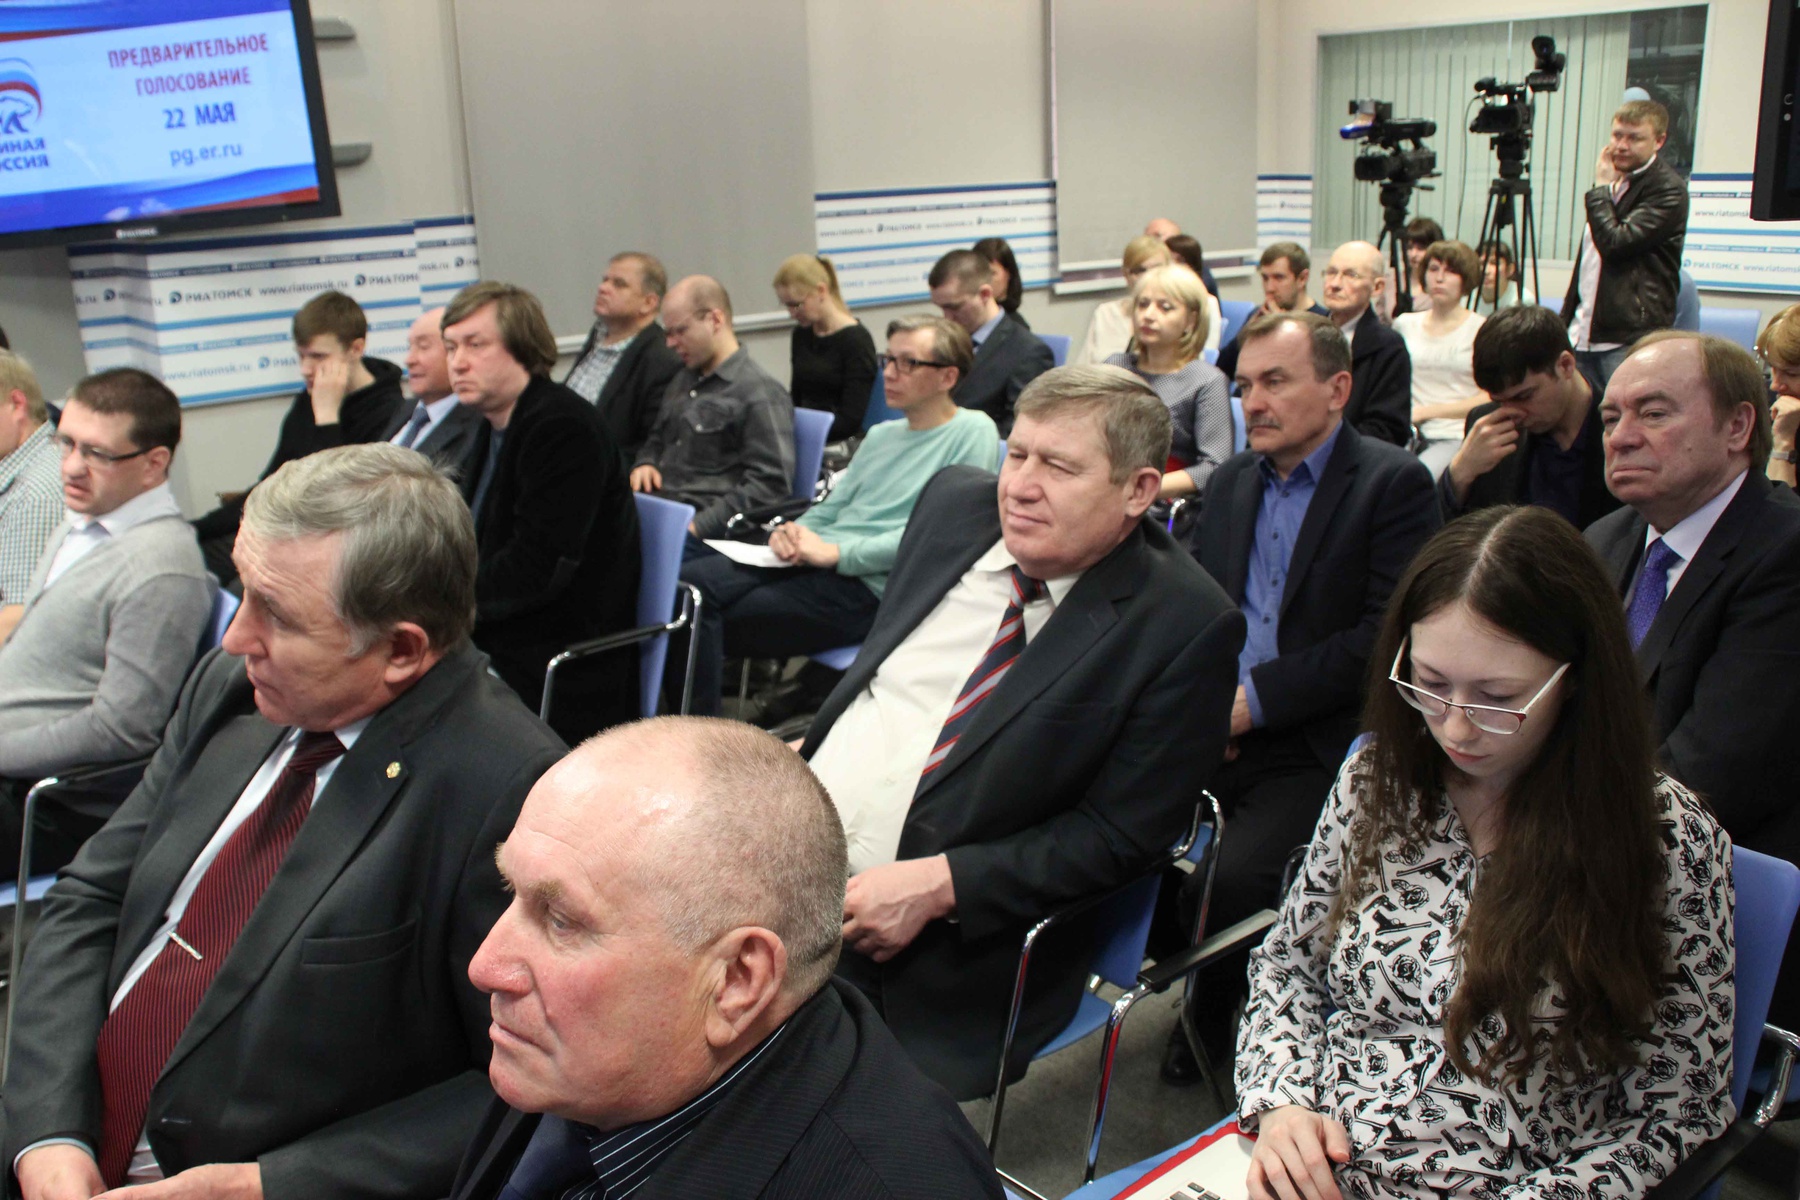    Дебаты участников предварительного голосования в регионах РФ. Томск